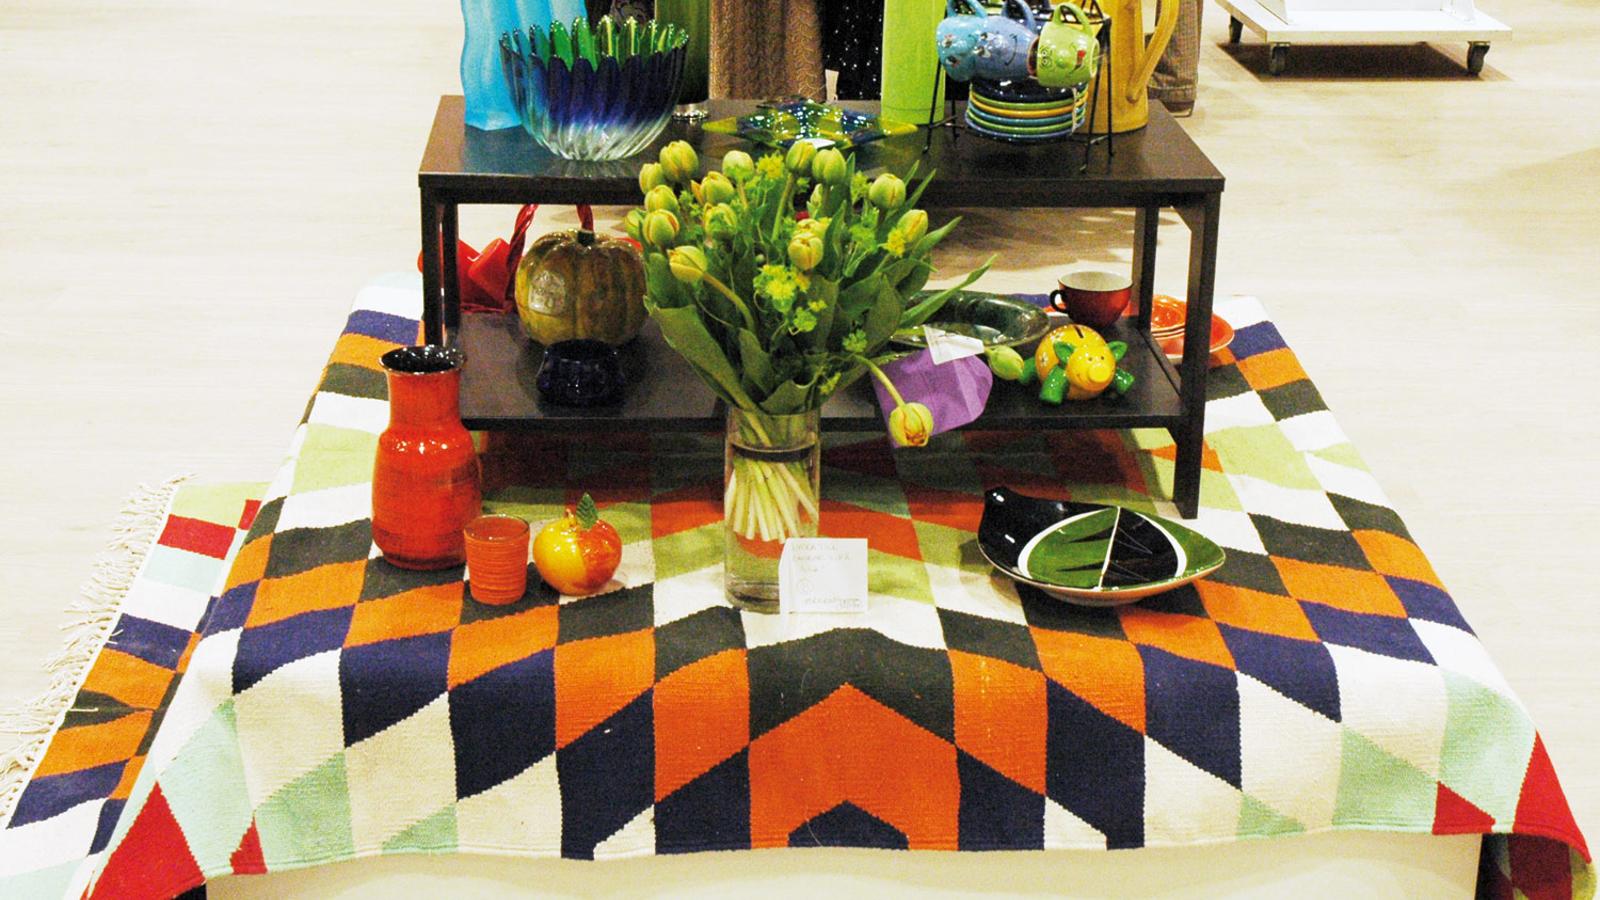 Ett litet bord med olika föremål på, bland annat termosar, vaser och dekorationer. 